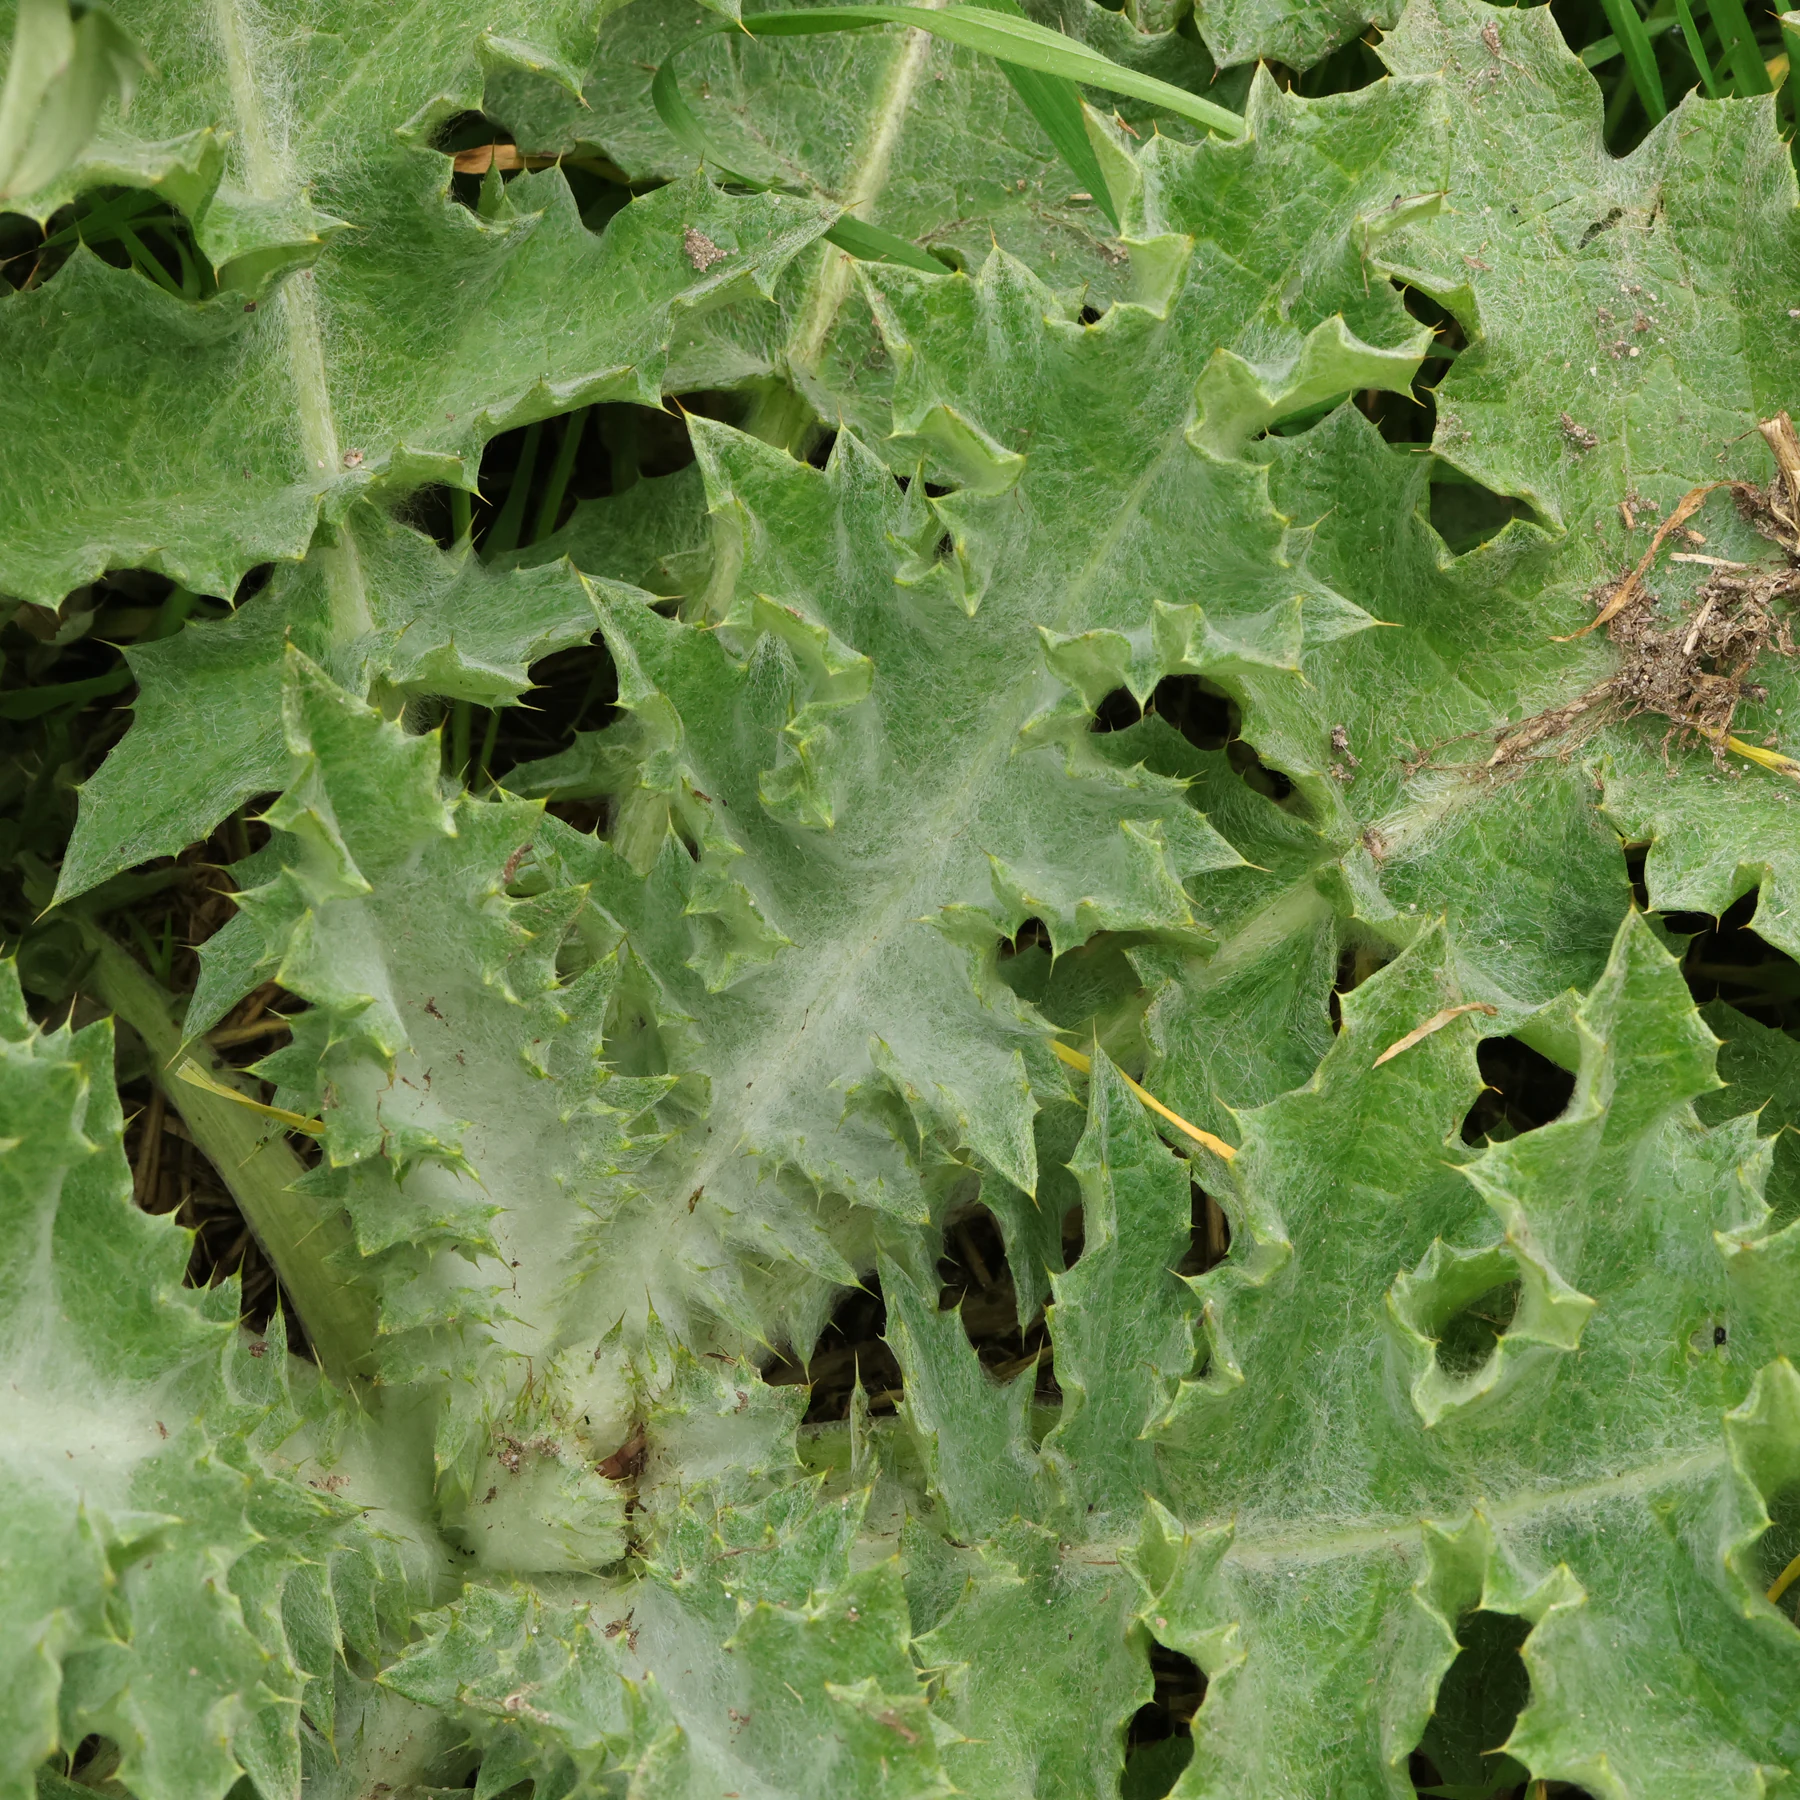 Cotton thistle leaf